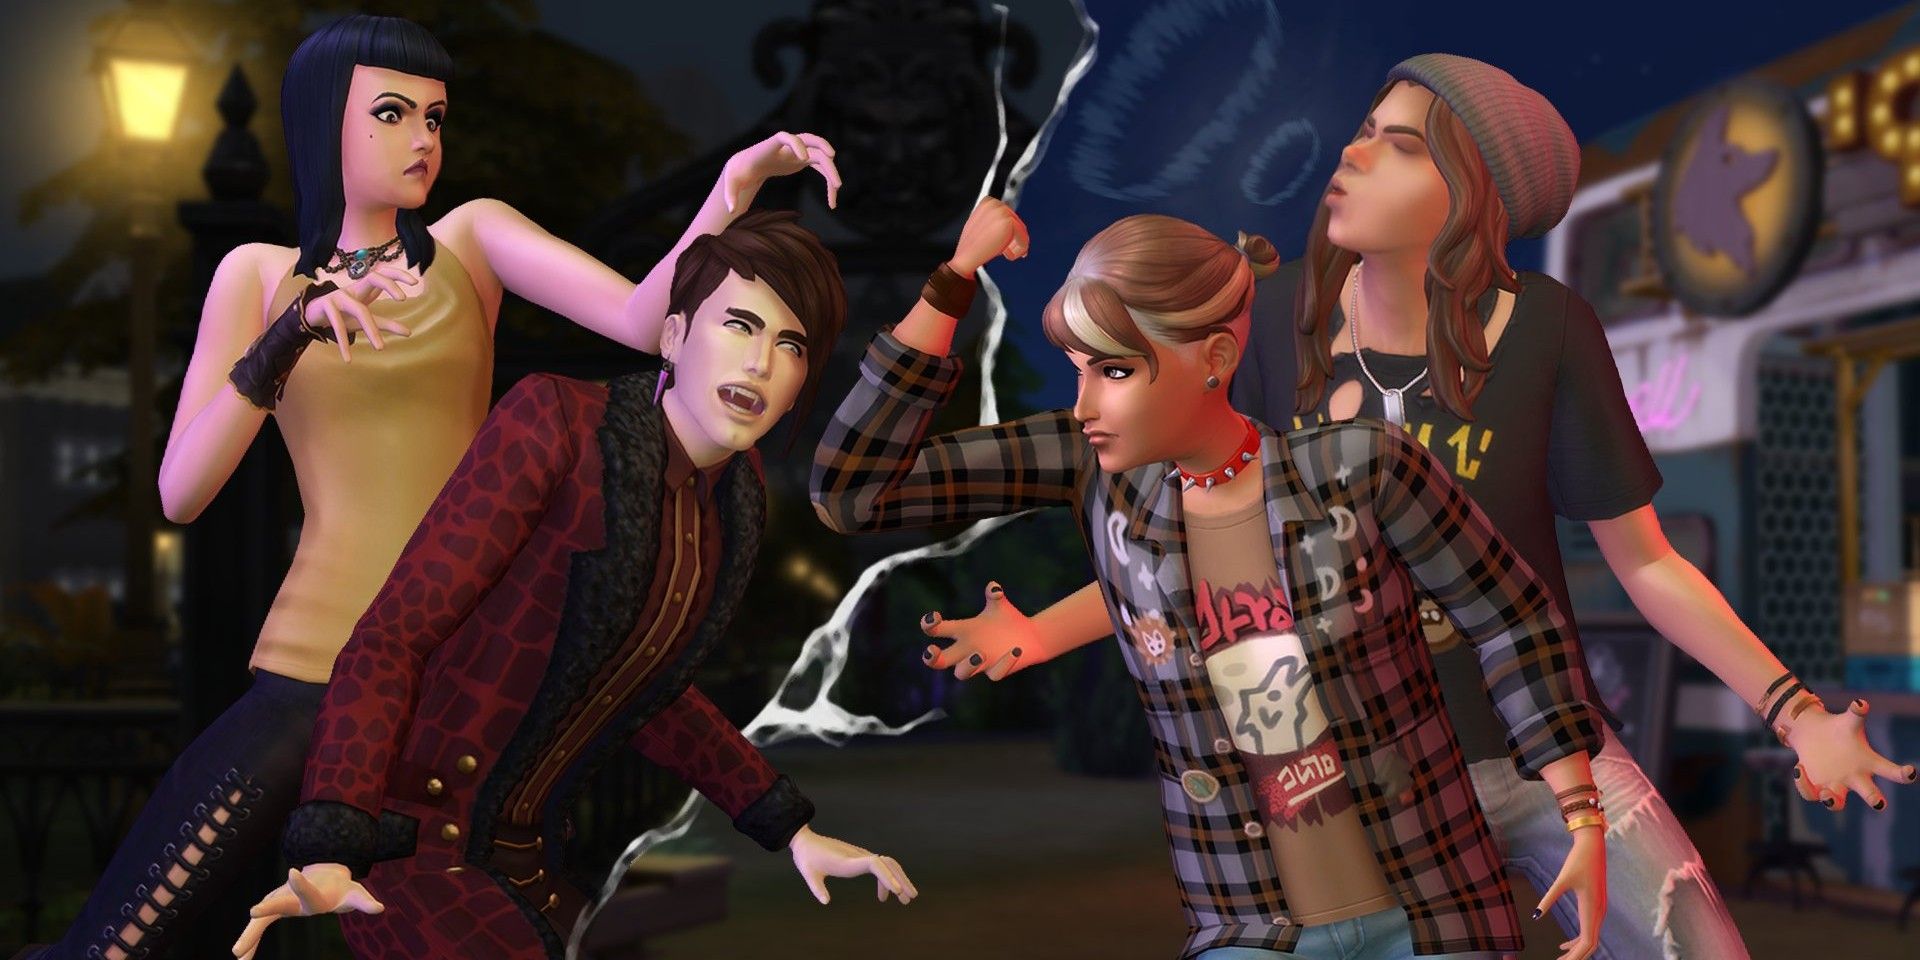 El diseño del lote de Sims 4 Fan’s Werewolves vs. Vampires está repleto de conocimientos